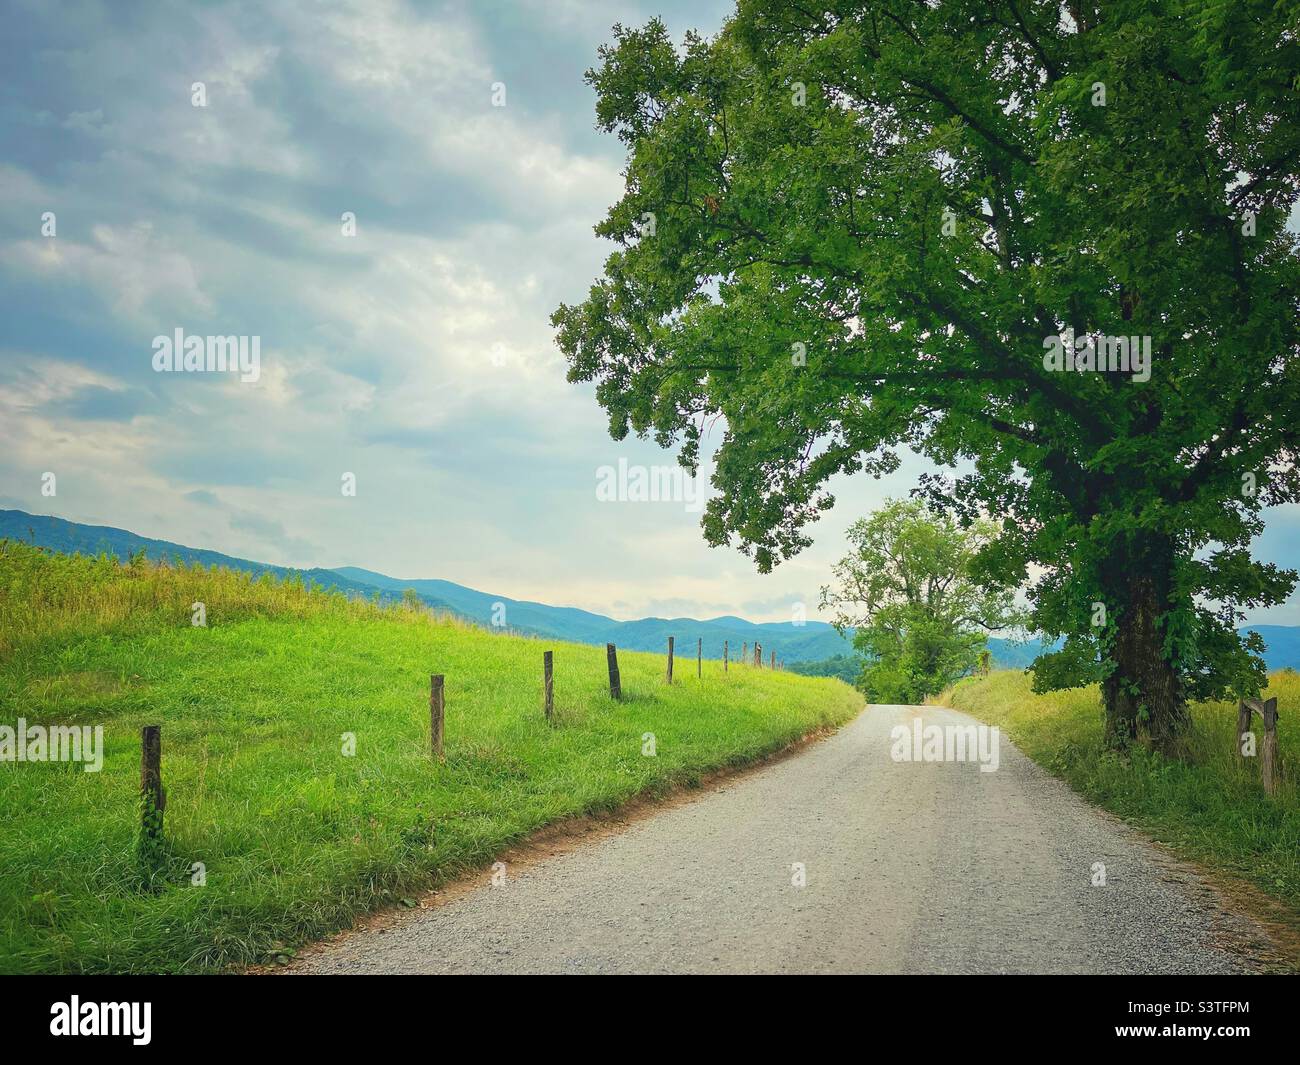 Una strada di ghiaia in una scena di campagna rurale - Parco Nazionale delle Great Smoky Mountains Foto Stock